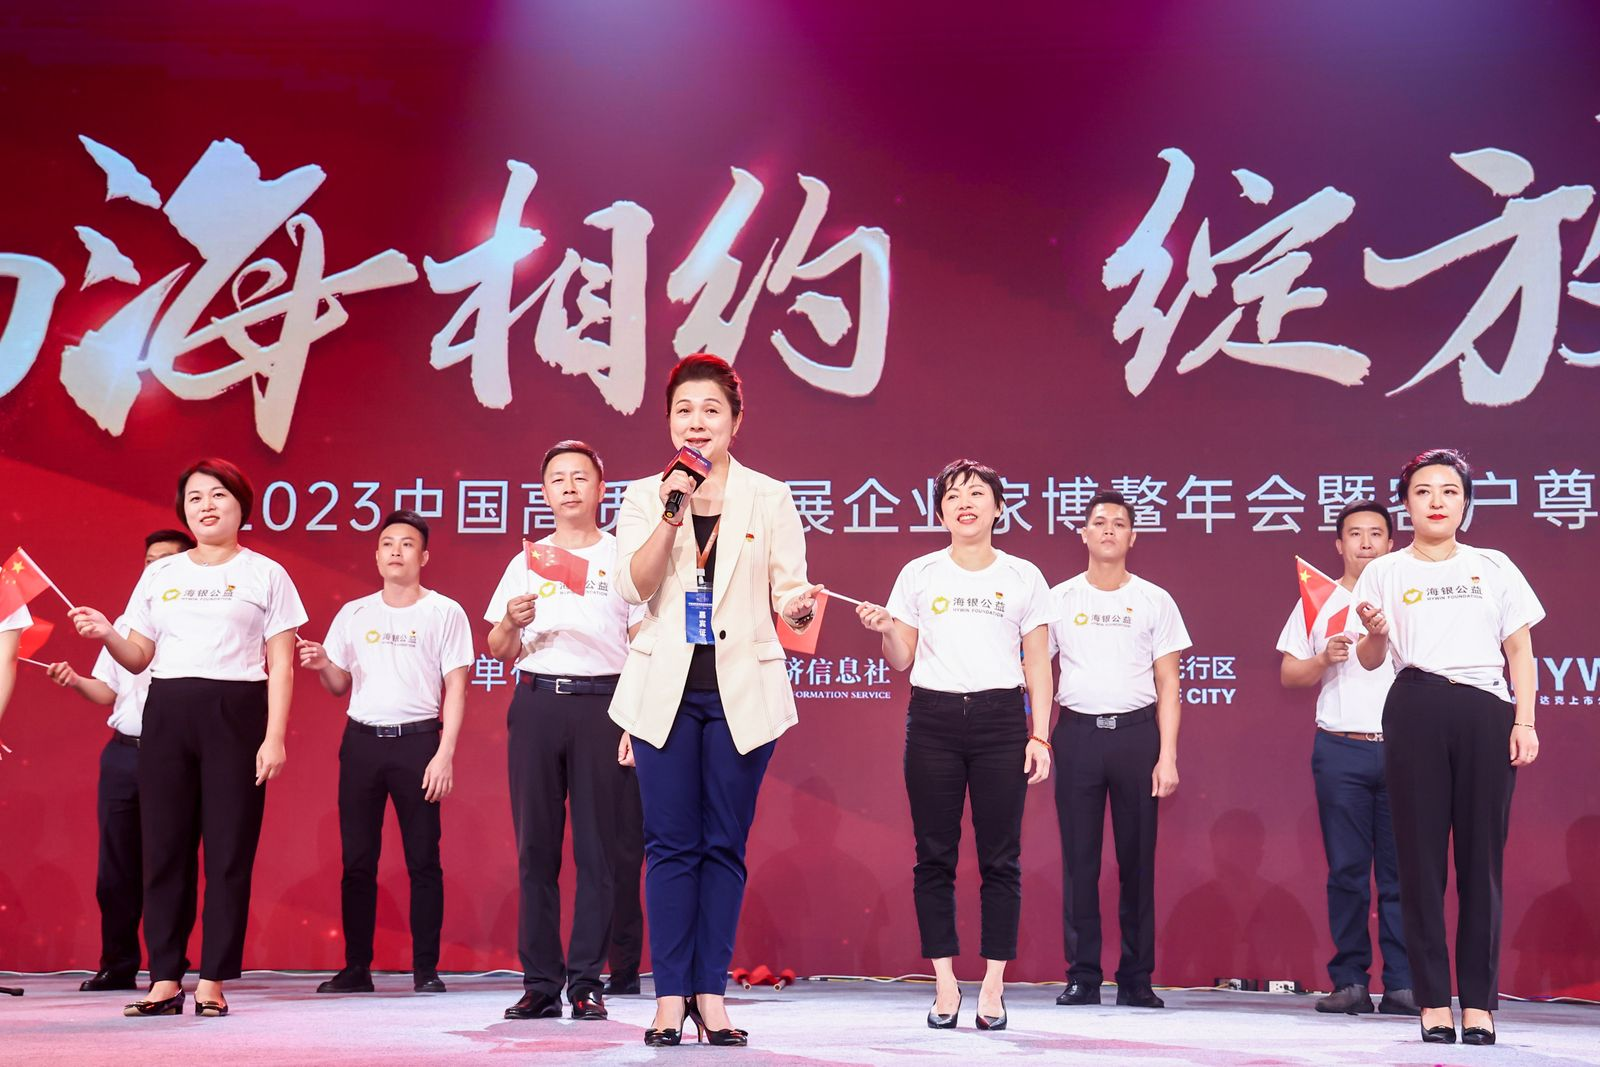 海银控股集团党委副书记刘晓枫和党员代表合唱